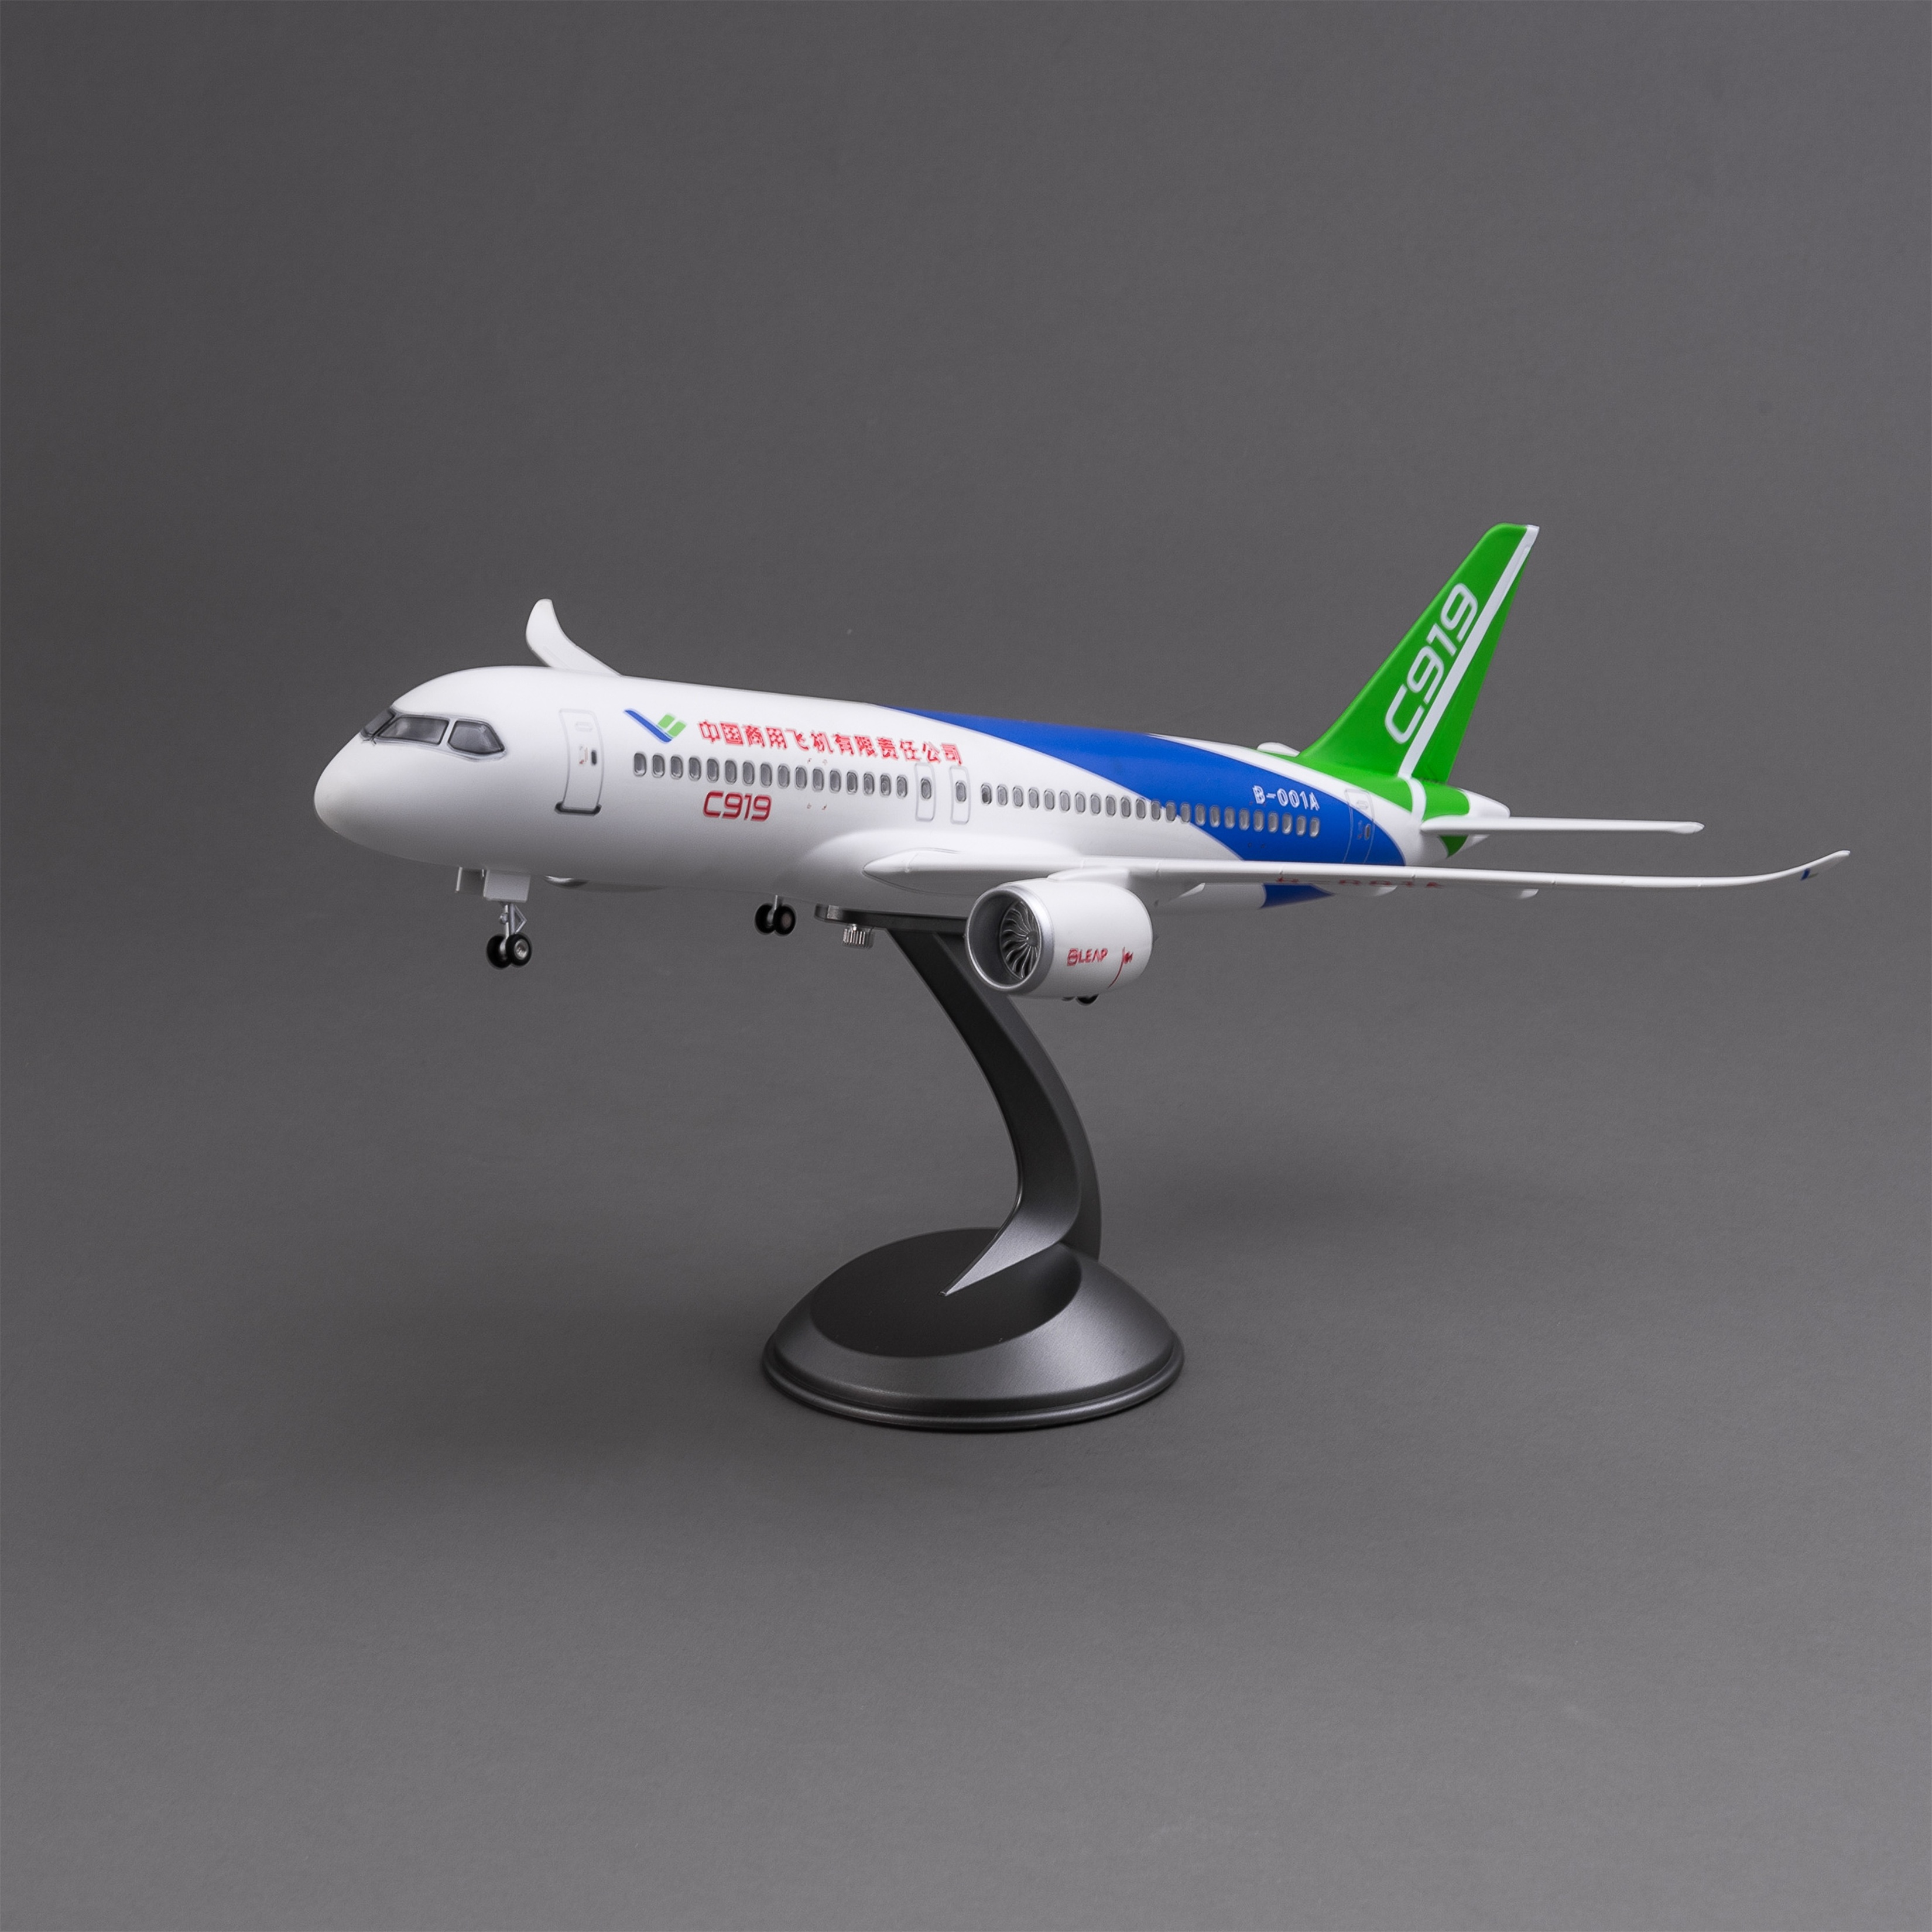 泡沫飞机/发光玩具/遥控泡沫飞机/C919/高铁轨道车产品图